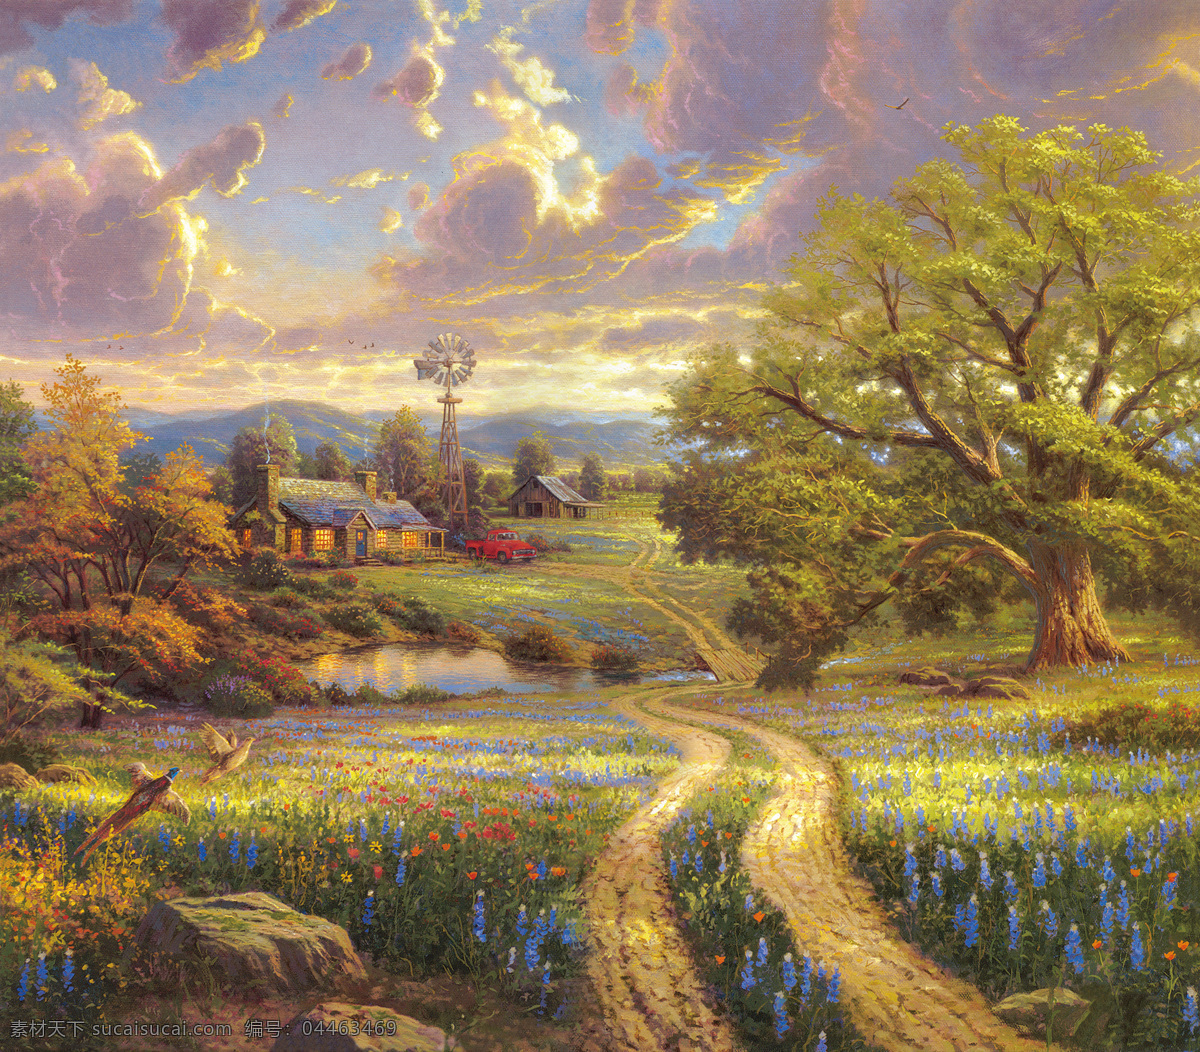 油画 喷绘 托马斯 风景 风景油画 喷绘素材 油画喷绘 托马斯油画 托马斯风景 油画素材 自然景观 自然风光